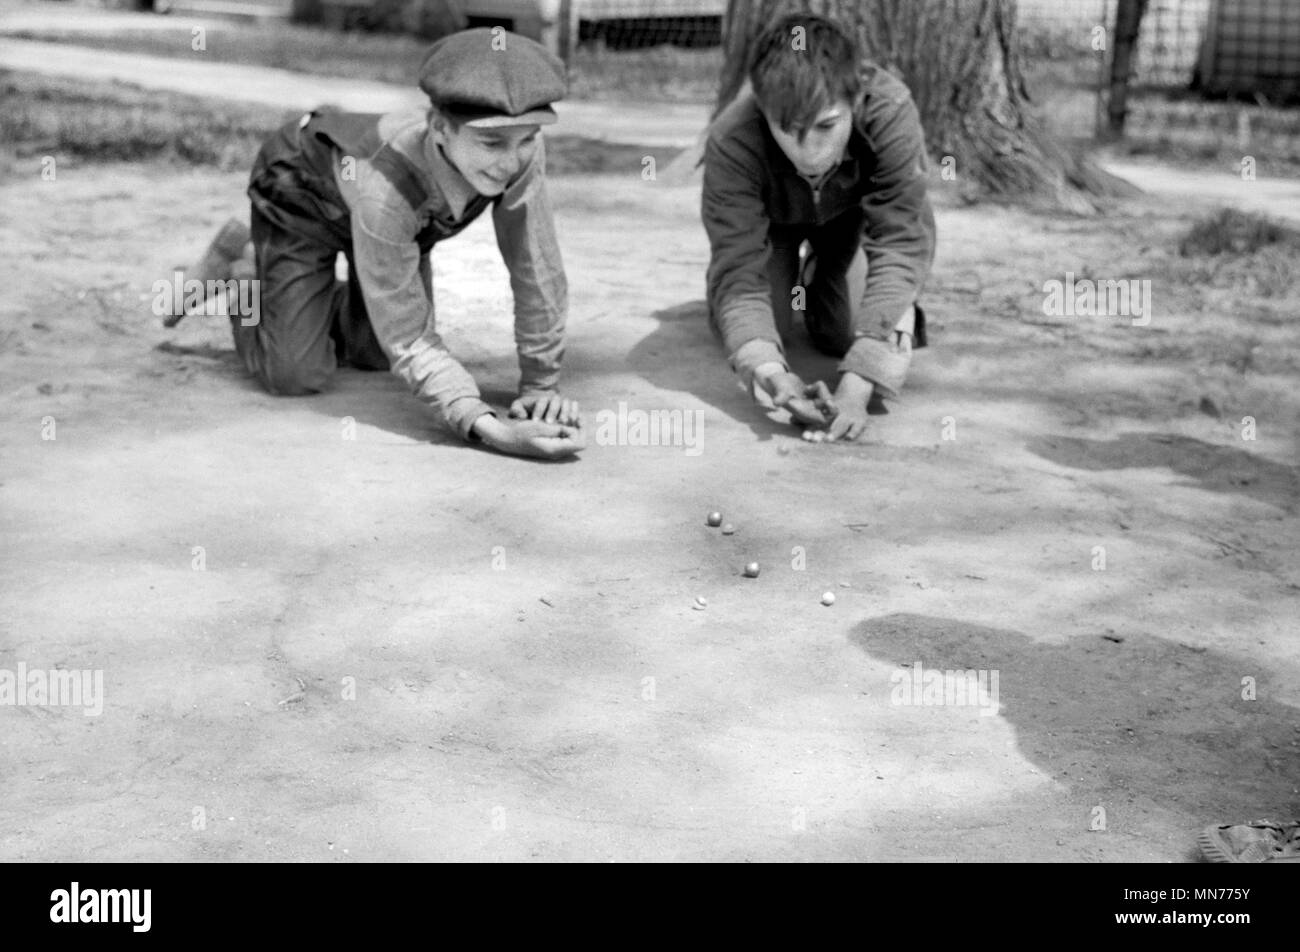 Dos muchachos disparando bolitas, Woodbine, Iowa, EE.UU., John Vachon para la Farm Security Administration, mayo de 1940 Foto de stock